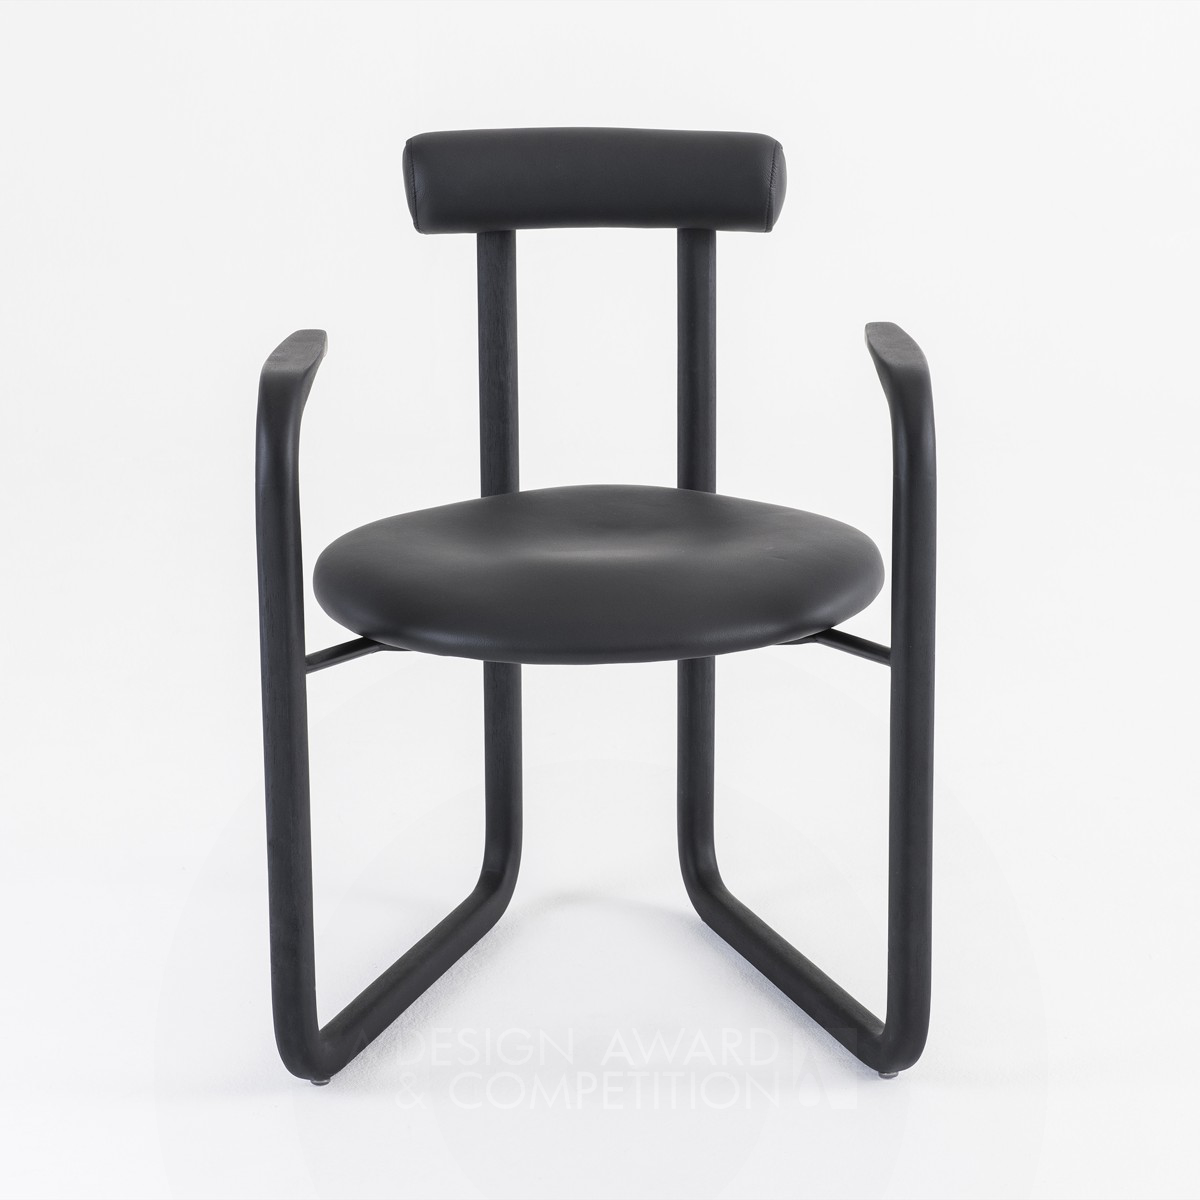 Ponto: L'elegante poltrona dal design minimalista di Roberta Banqueri